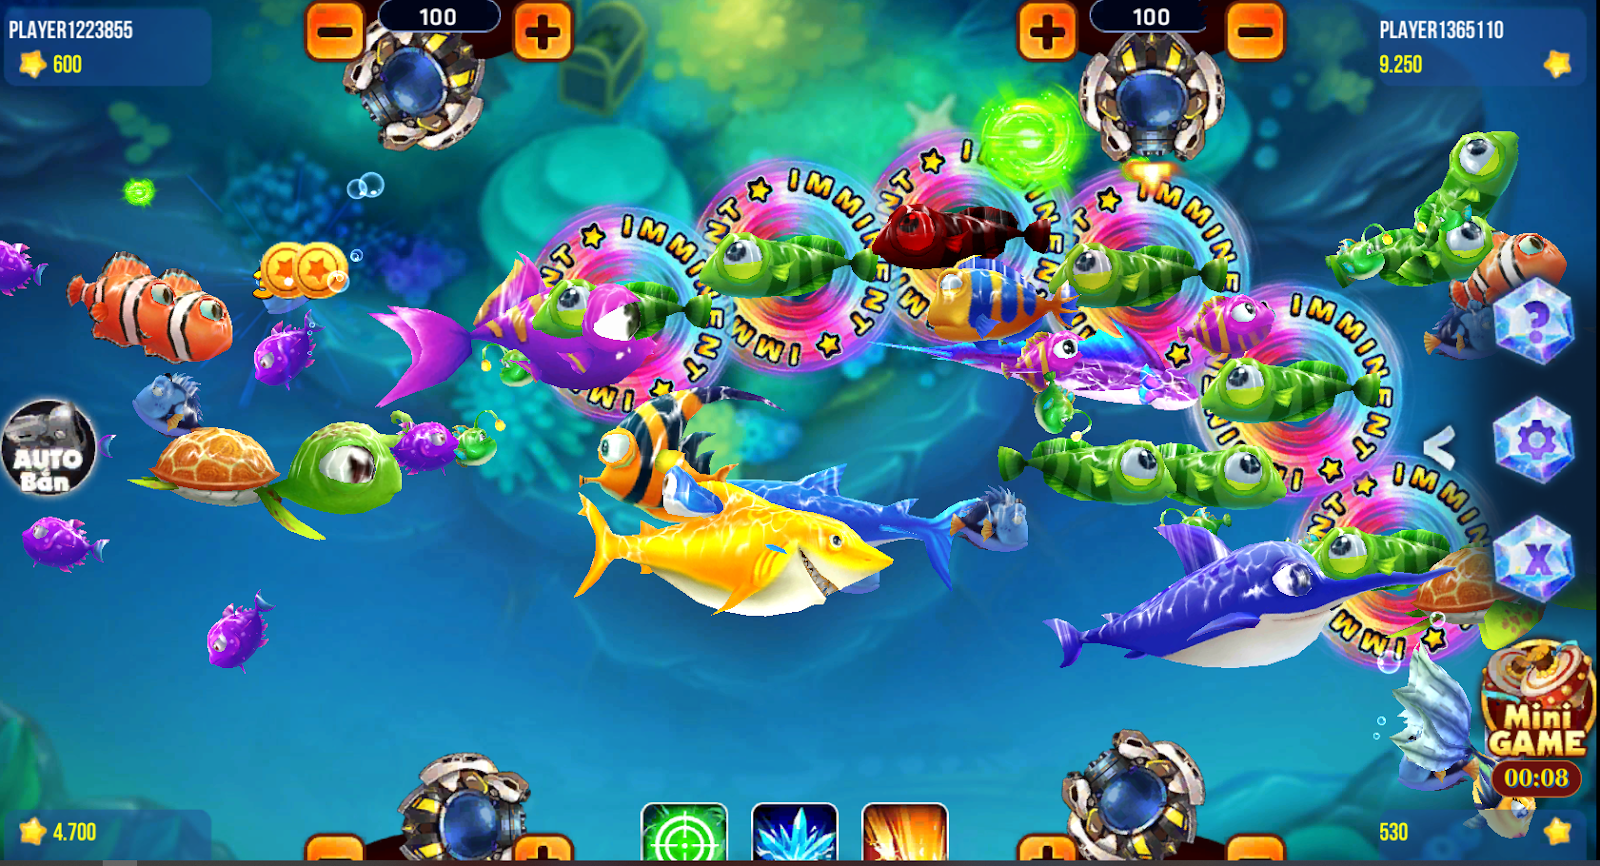 bancah5 - siêu cá - game bắn cá h5 online giải trí 2022 Trang web